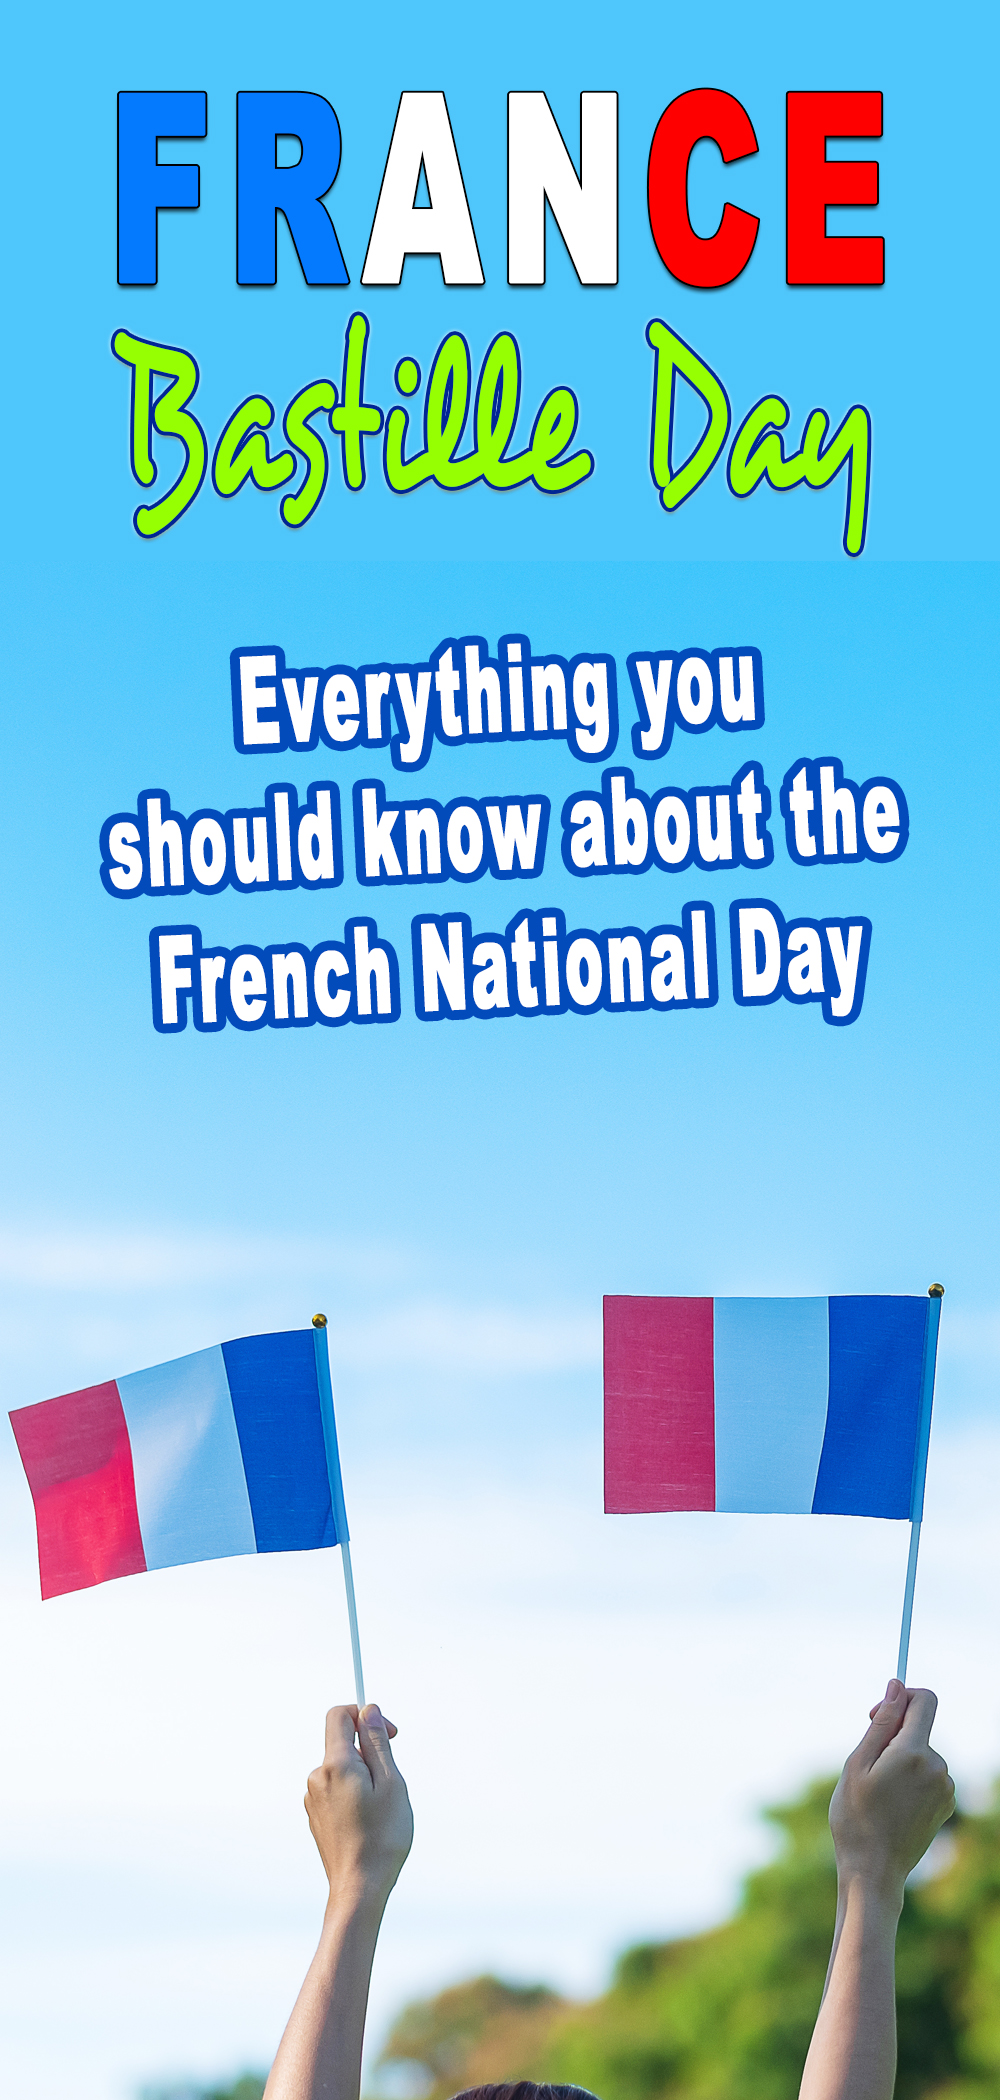 Fête nationale française — Wikipédia